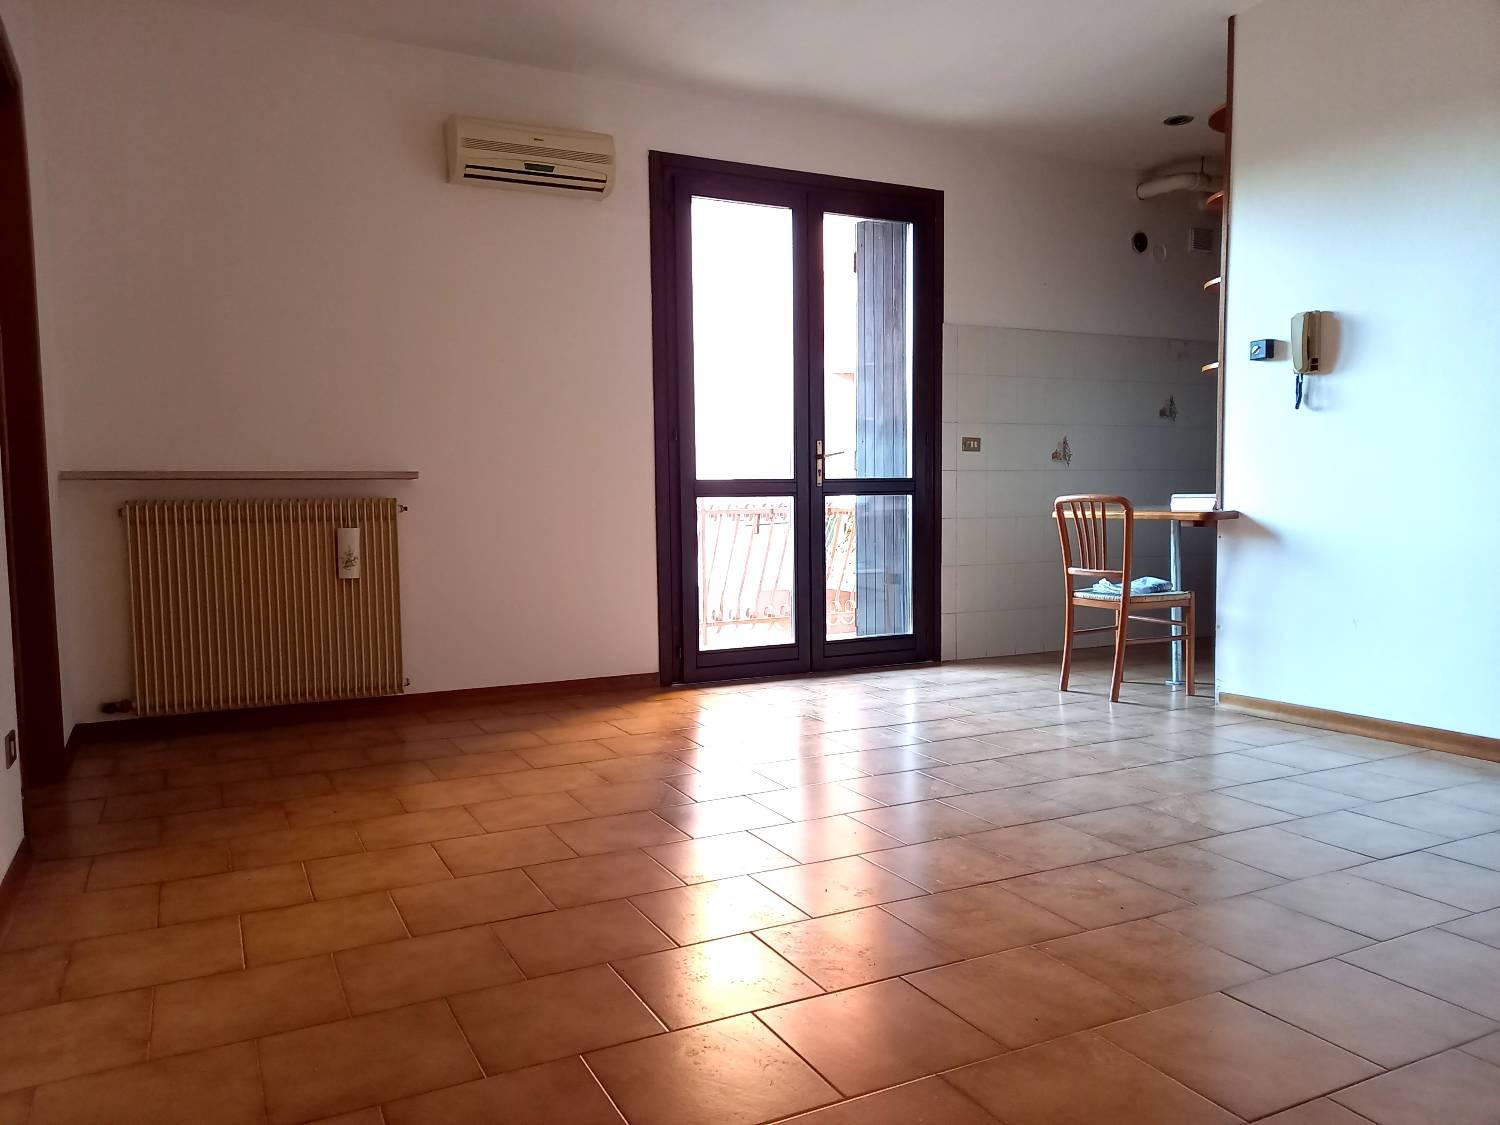 Appartamento in vendita a Romans d'Isonzo, 4 locali, prezzo € 59.000 | CambioCasa.it